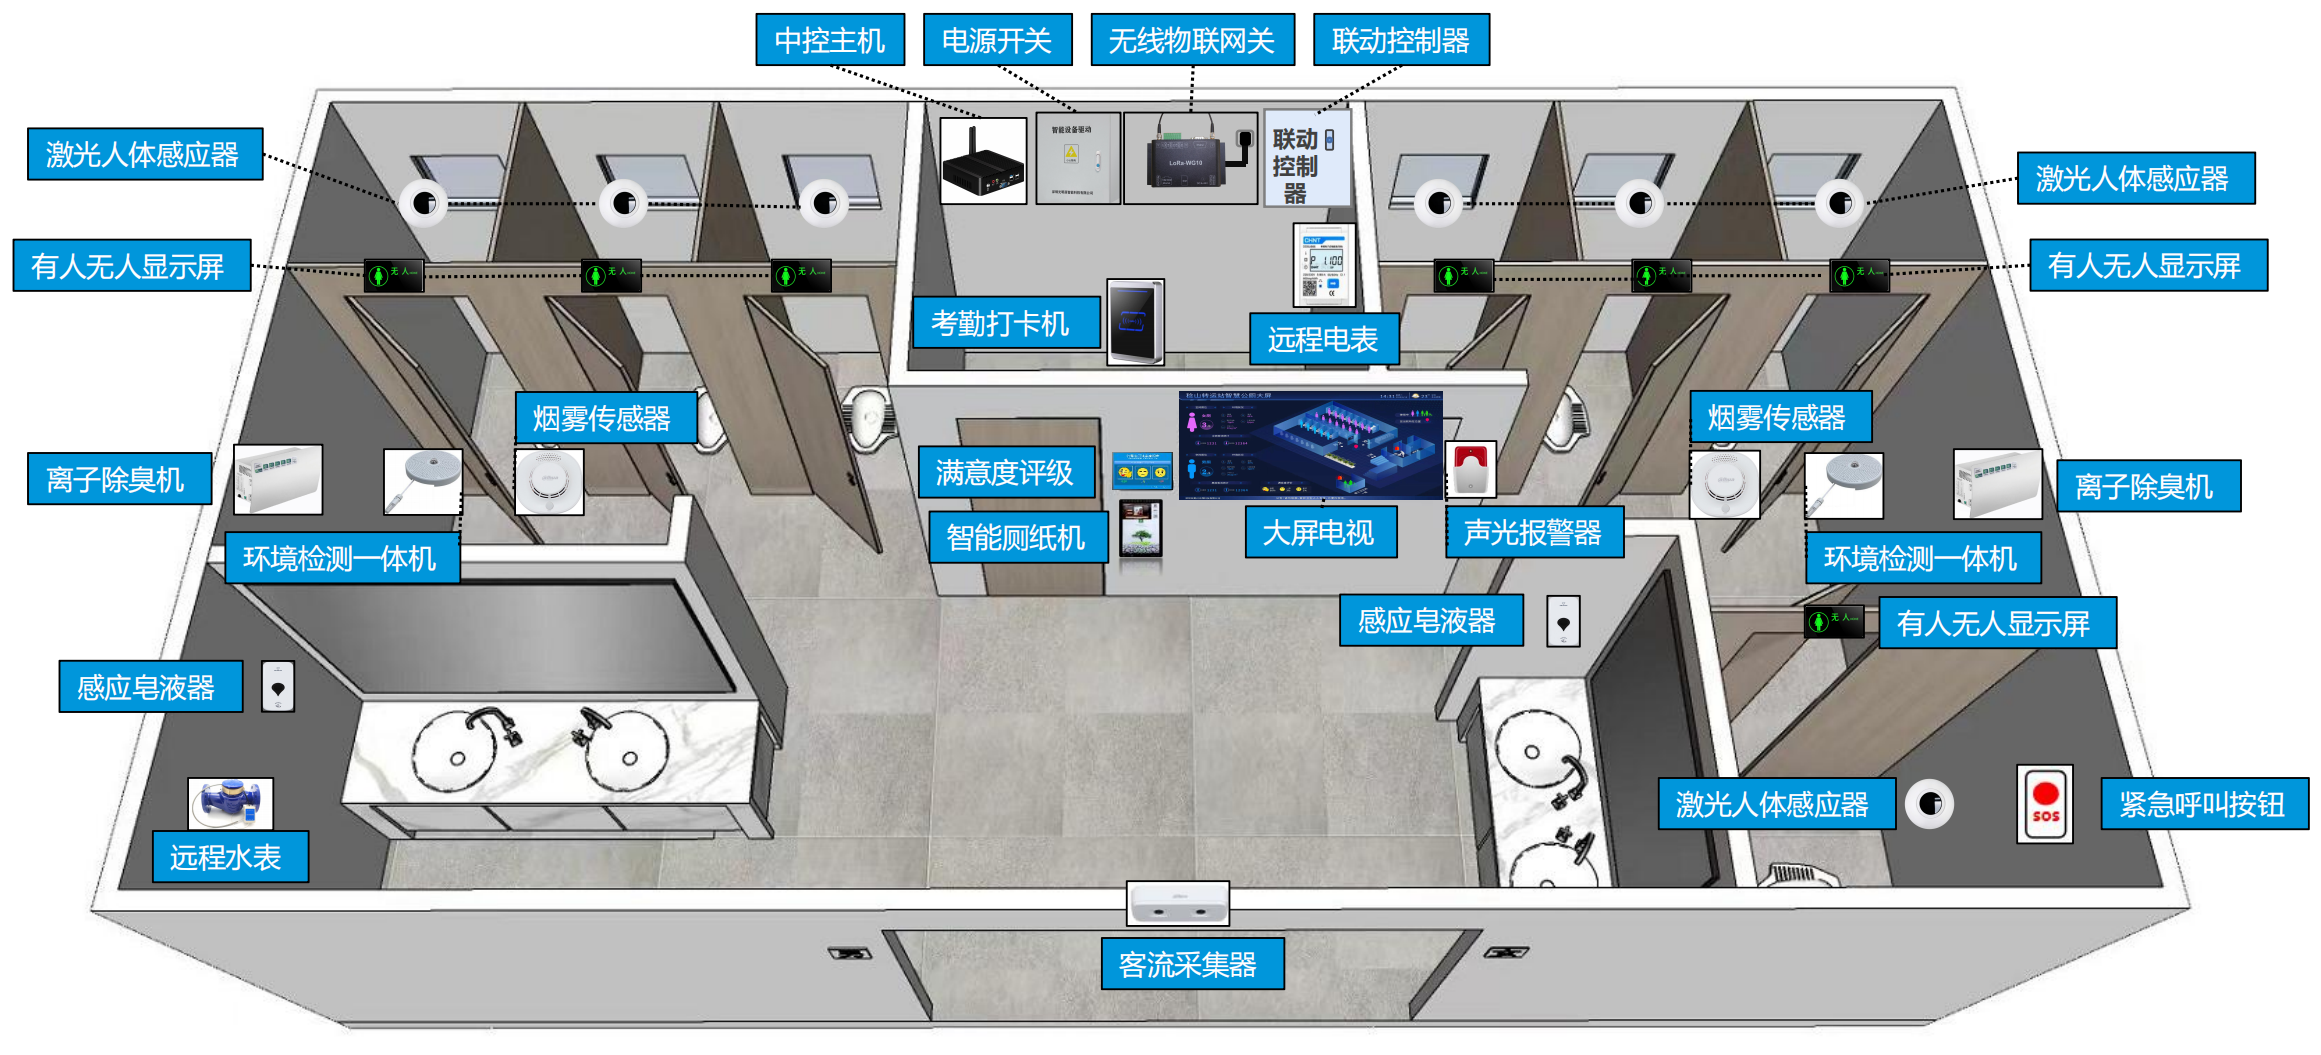 Smart public toilet product layout